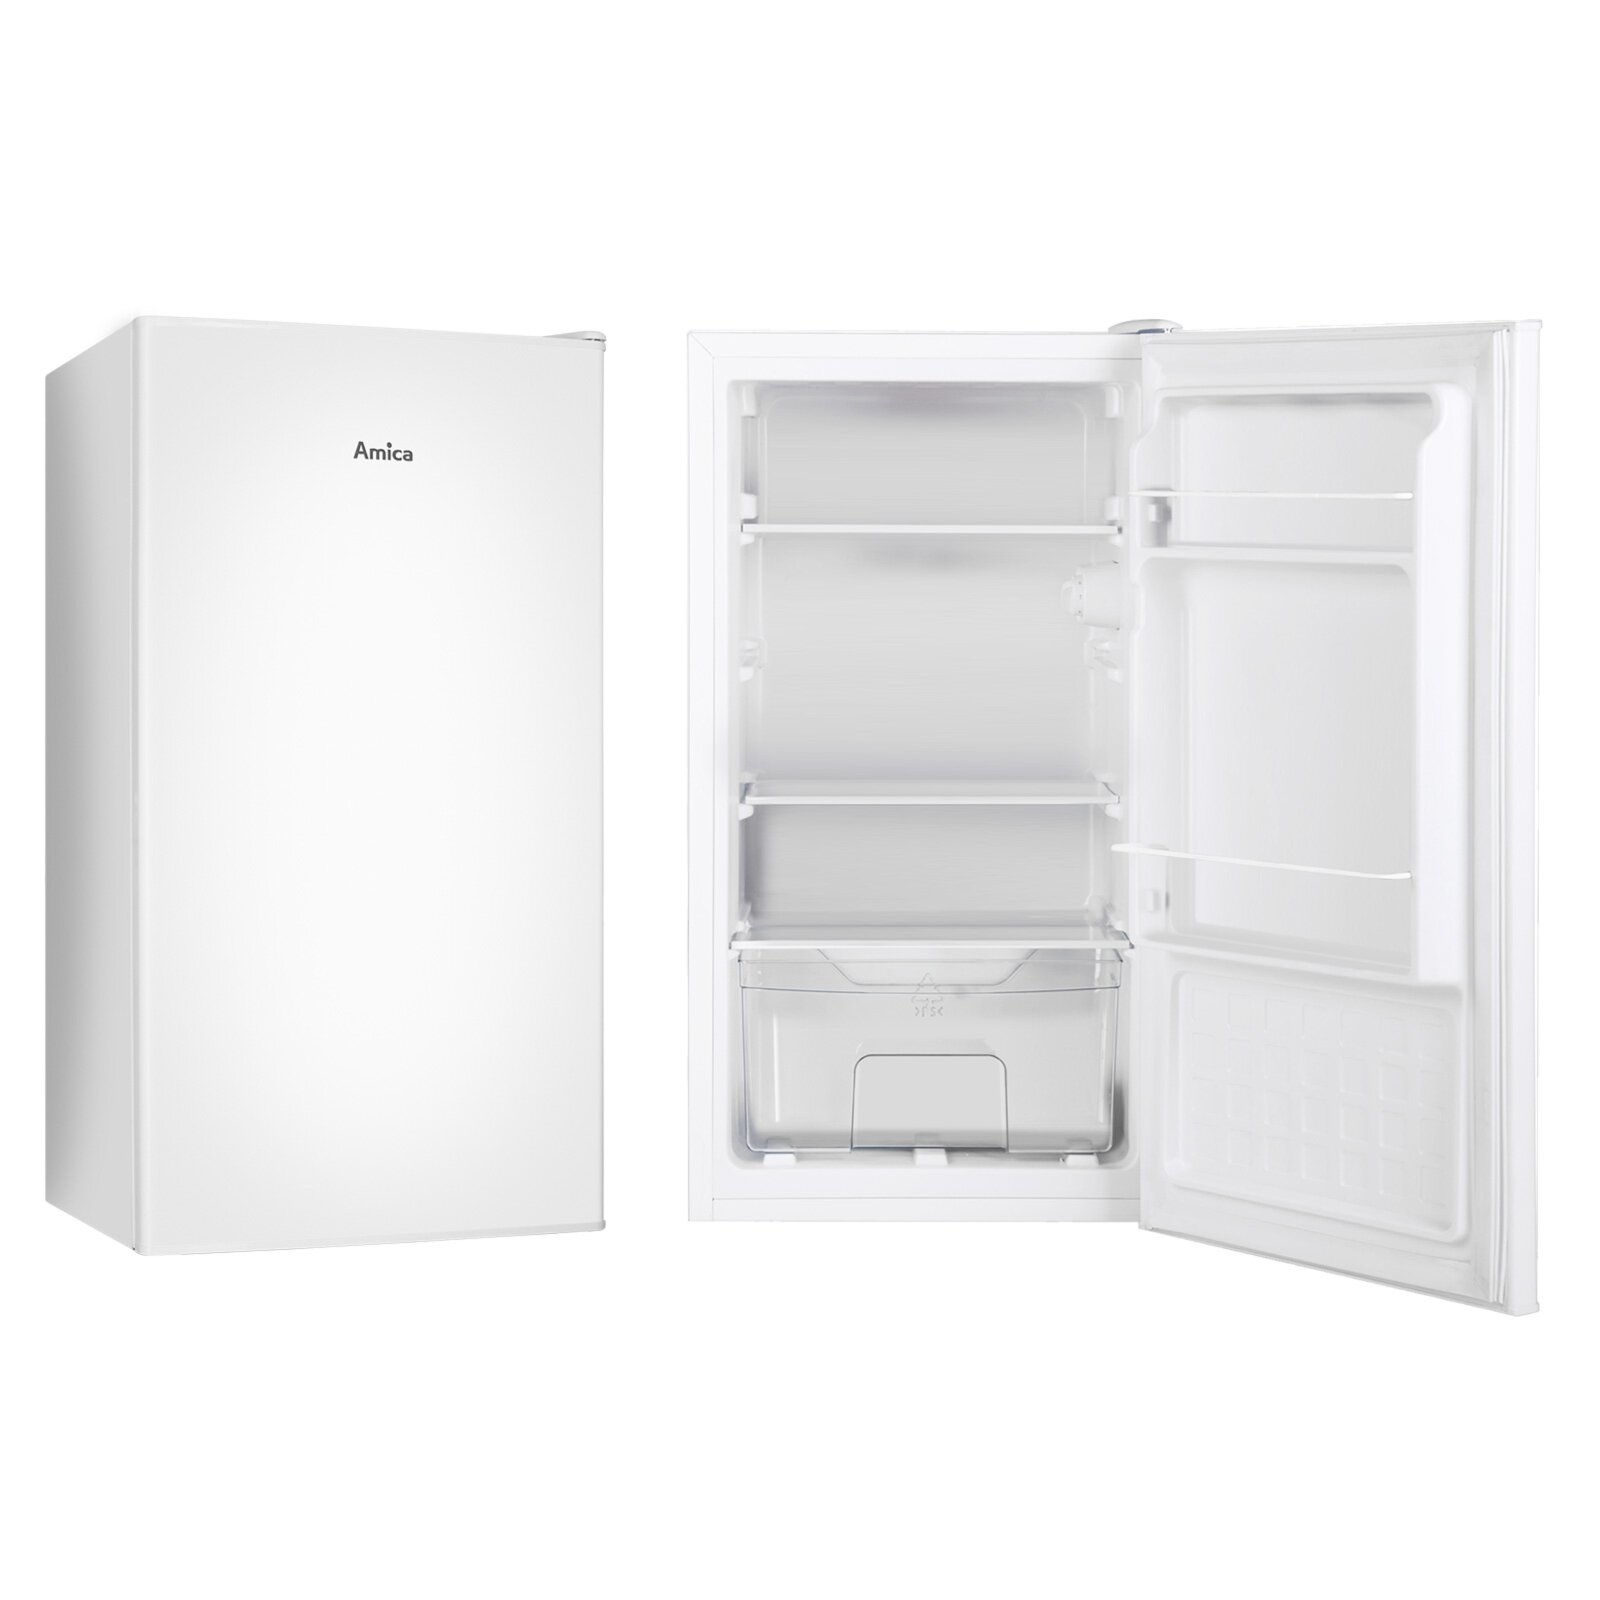 AMICA Vollraum-Kühlschrank VKS 351 kaufen bei E W ROLLER | Online - - weiß 116